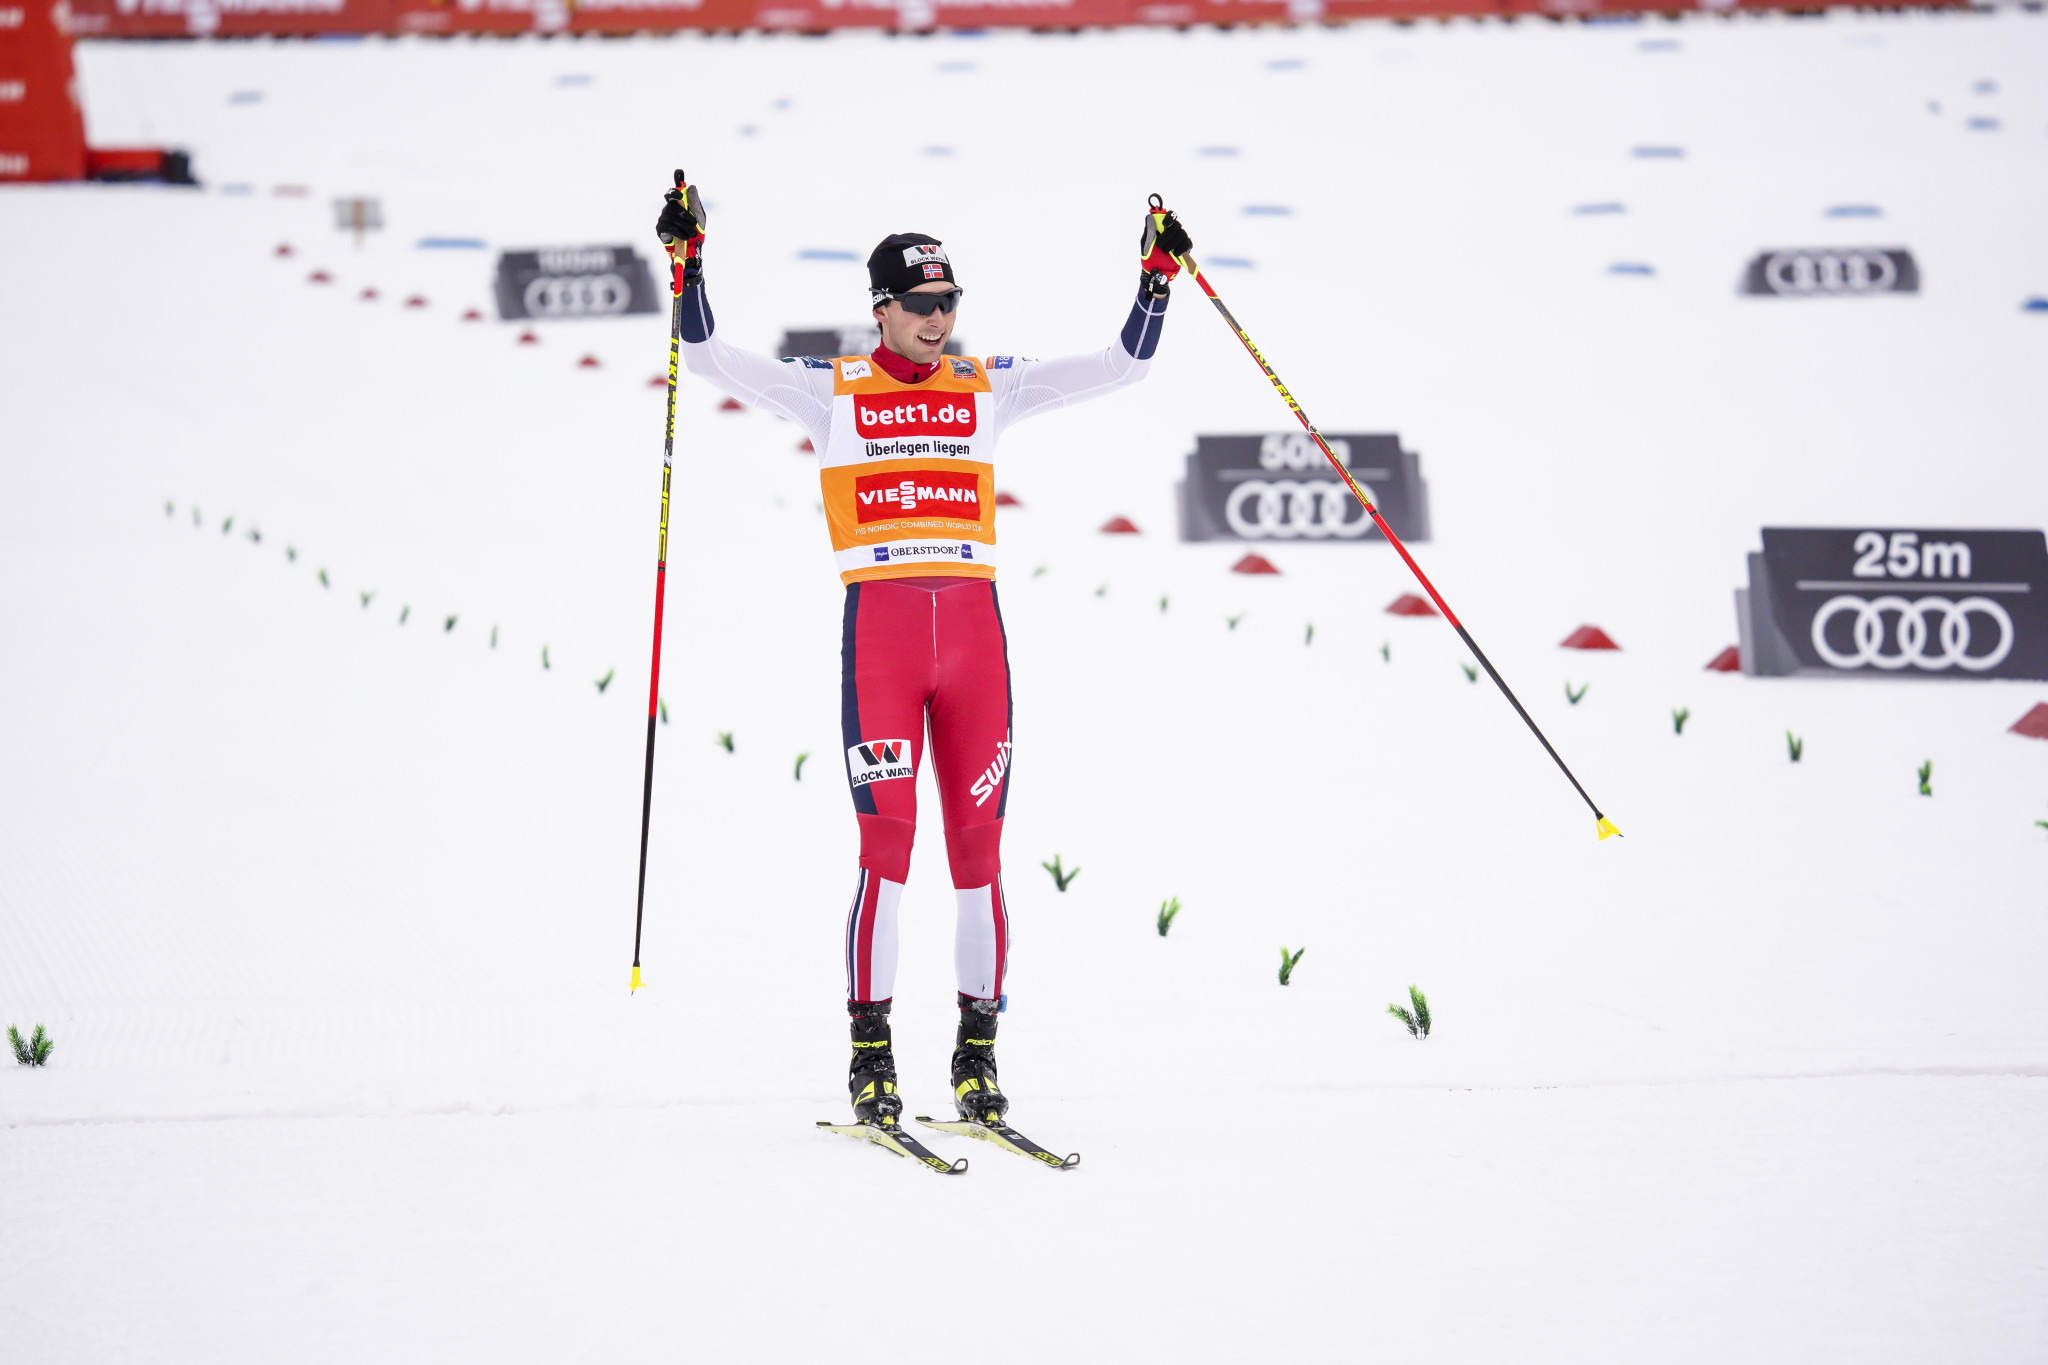 Le Norvégien Jarl Magnus Riiber a été un gagnant confortable à Seefeld aujourd'hui dans la Coupe du monde FIS de combiné nordique © Getty Images